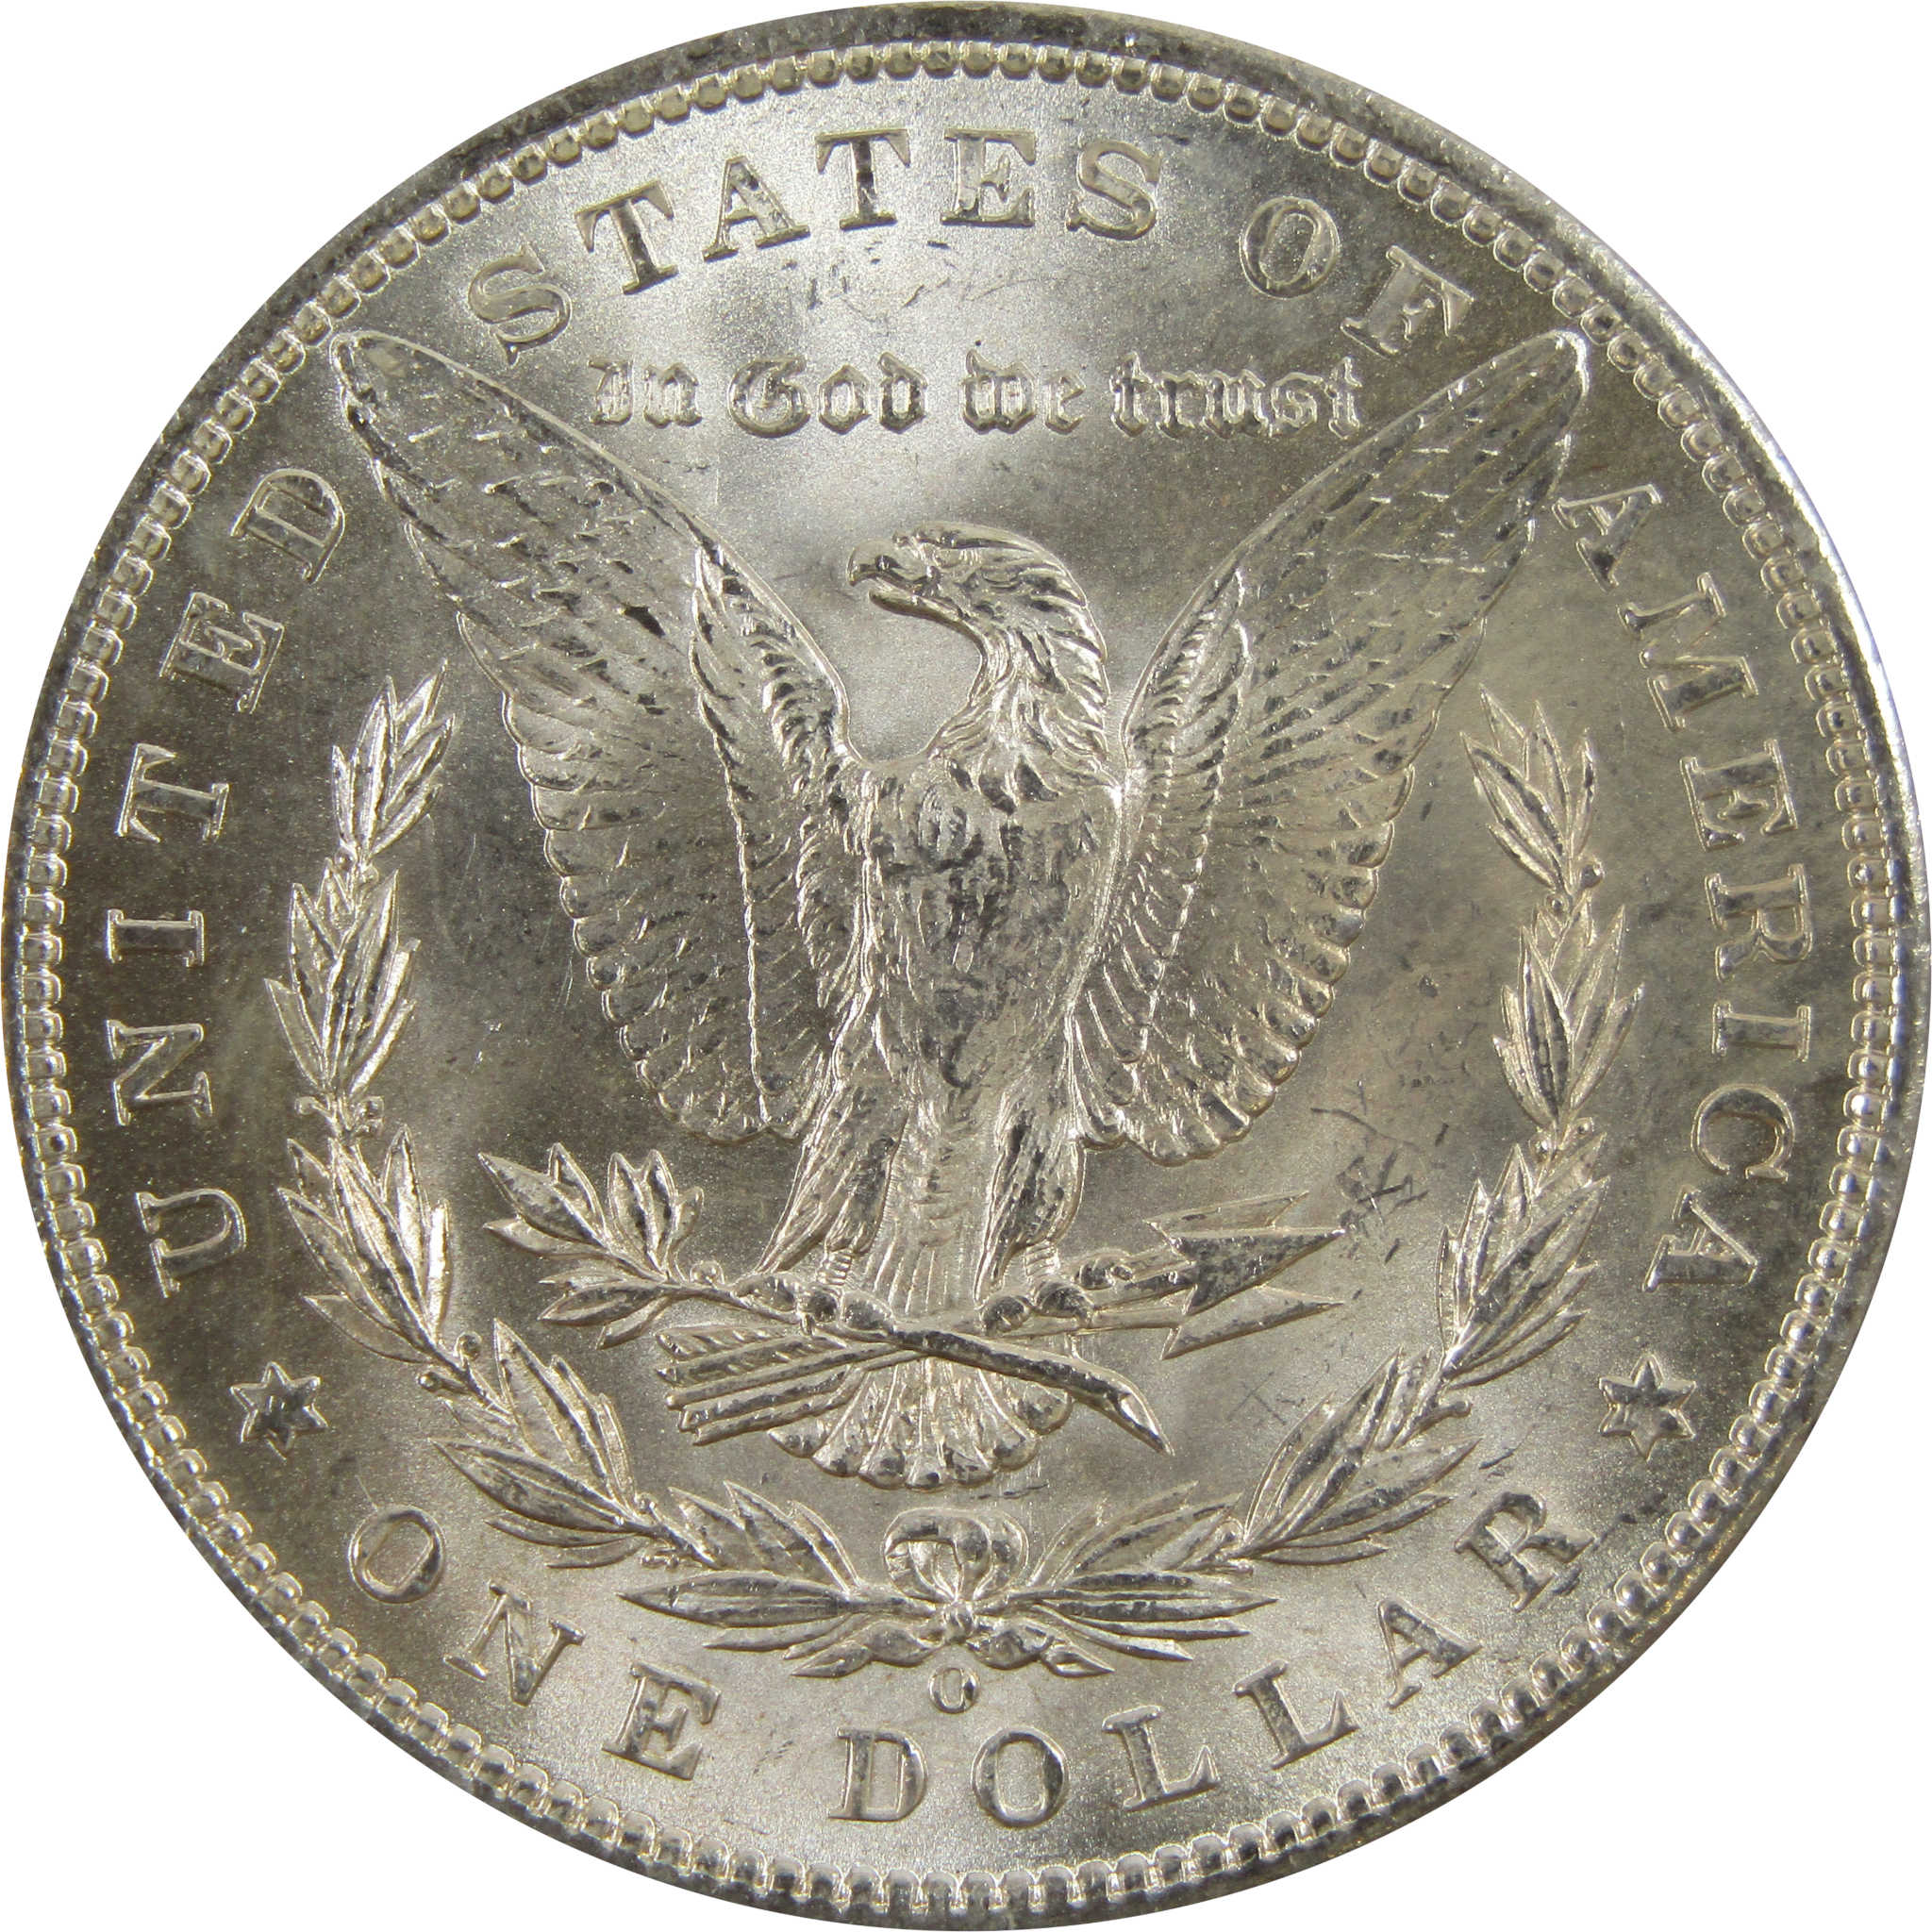 1898 O Morgan Dollar BU Uncirculated 90% Silver $1 Coin SKU:I5225 - Morgan coin - Morgan silver dollar - Morgan silver dollar for sale - Profile Coins &amp; Collectibles